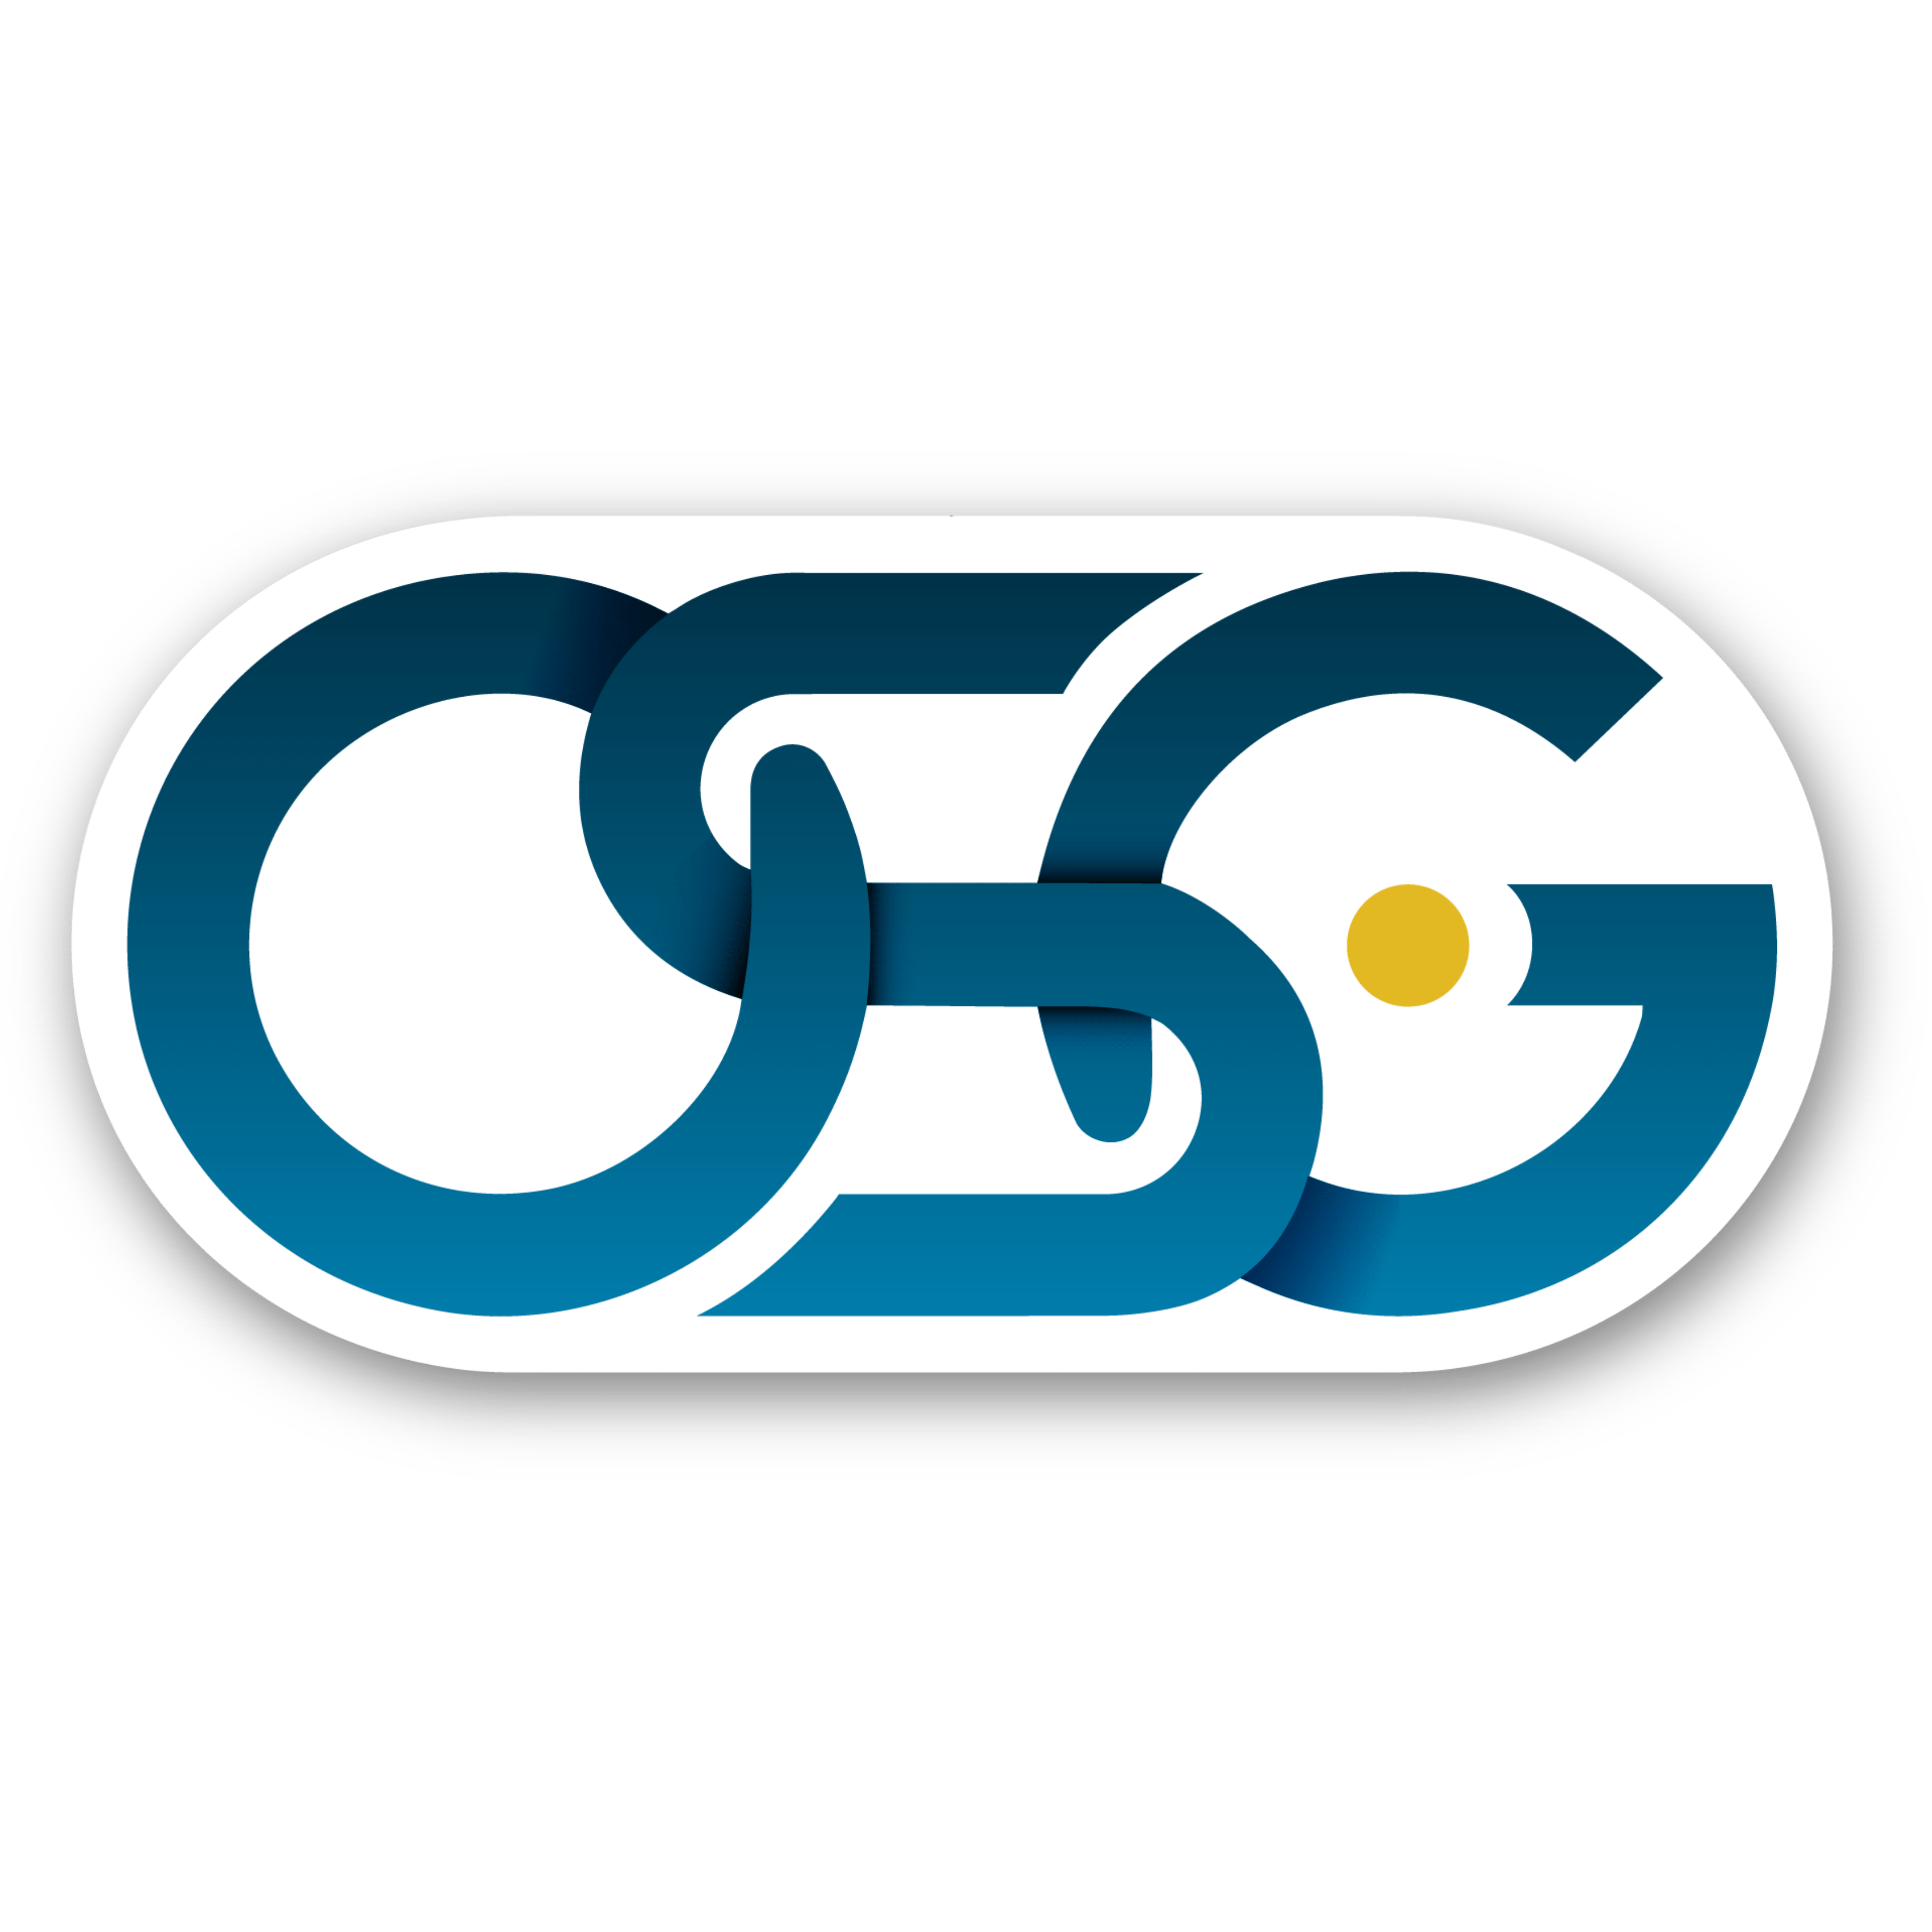 OSGT logo